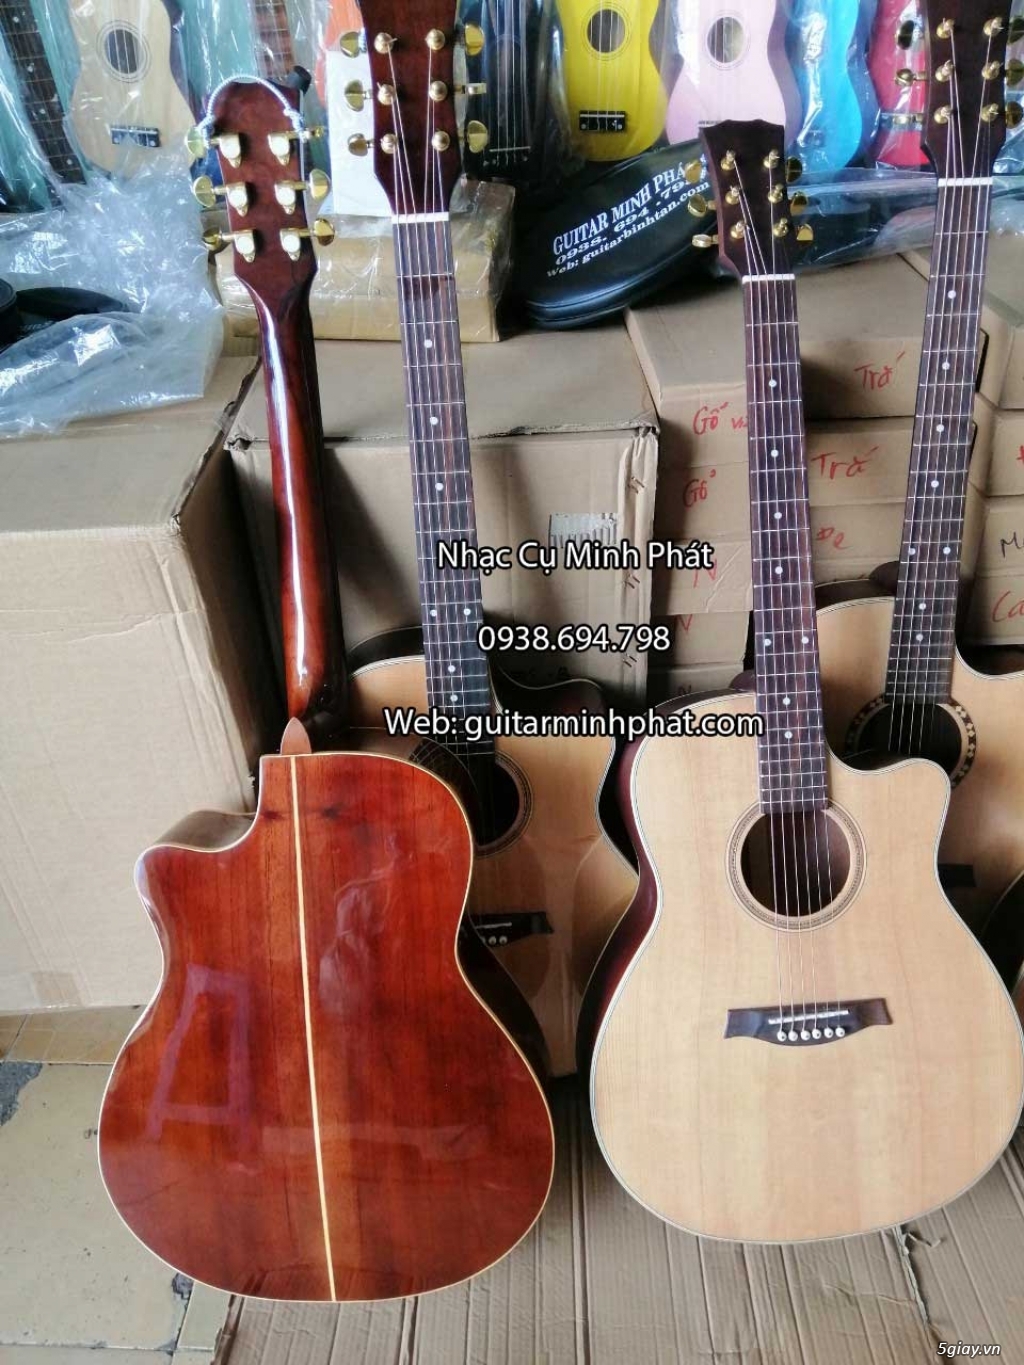 Bán đàn guitar, ukulele, kalimba giá rẻ ở quận Gò Vấp TPHCM - 12